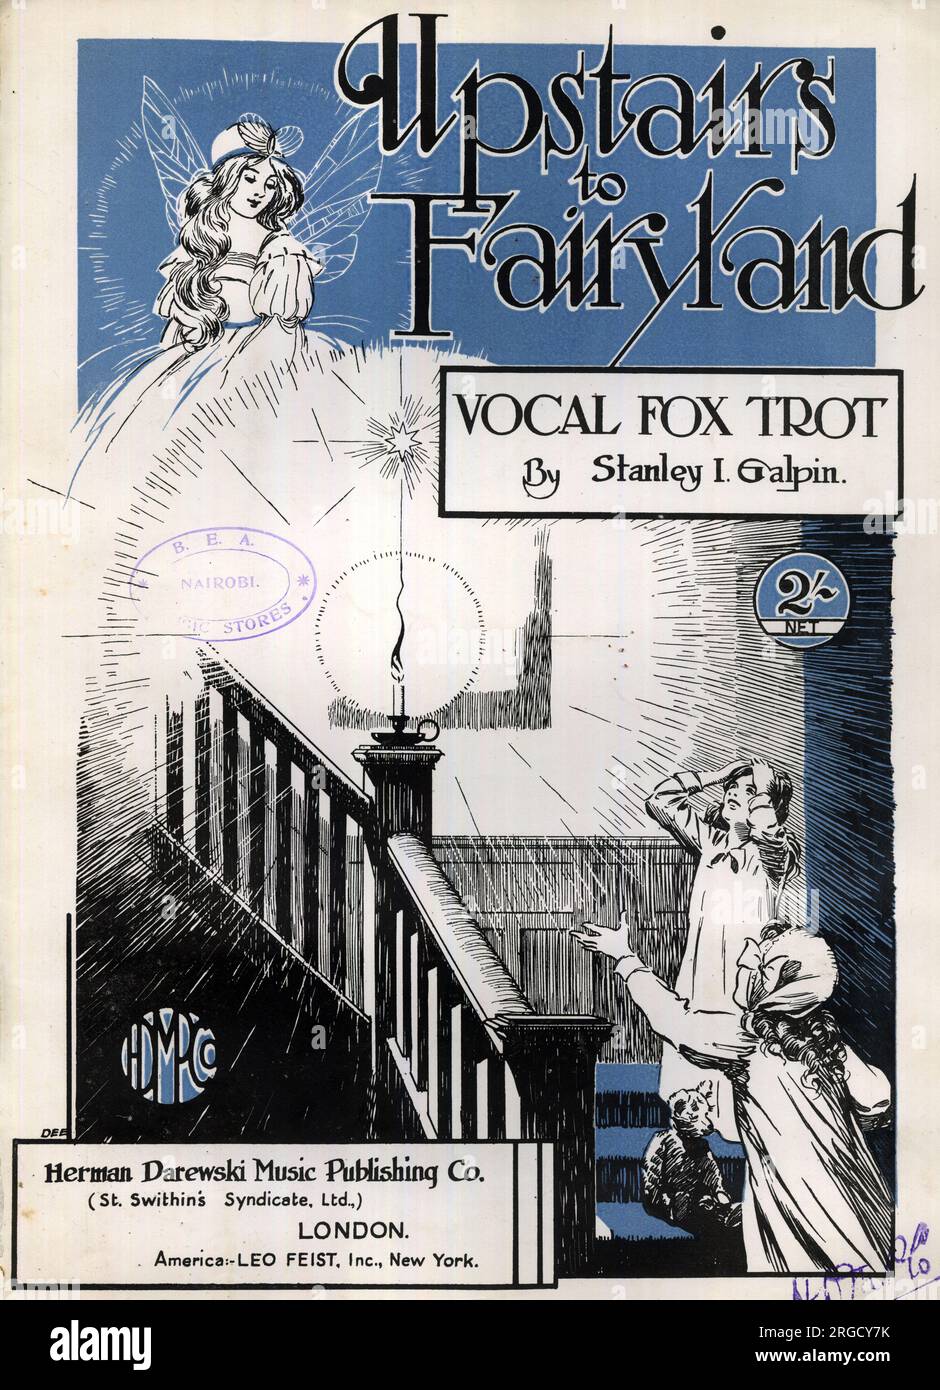 Copertina musicale, al piano superiore di Fairyland, trotto vocale della volpe di Stanley i Galpin Foto Stock